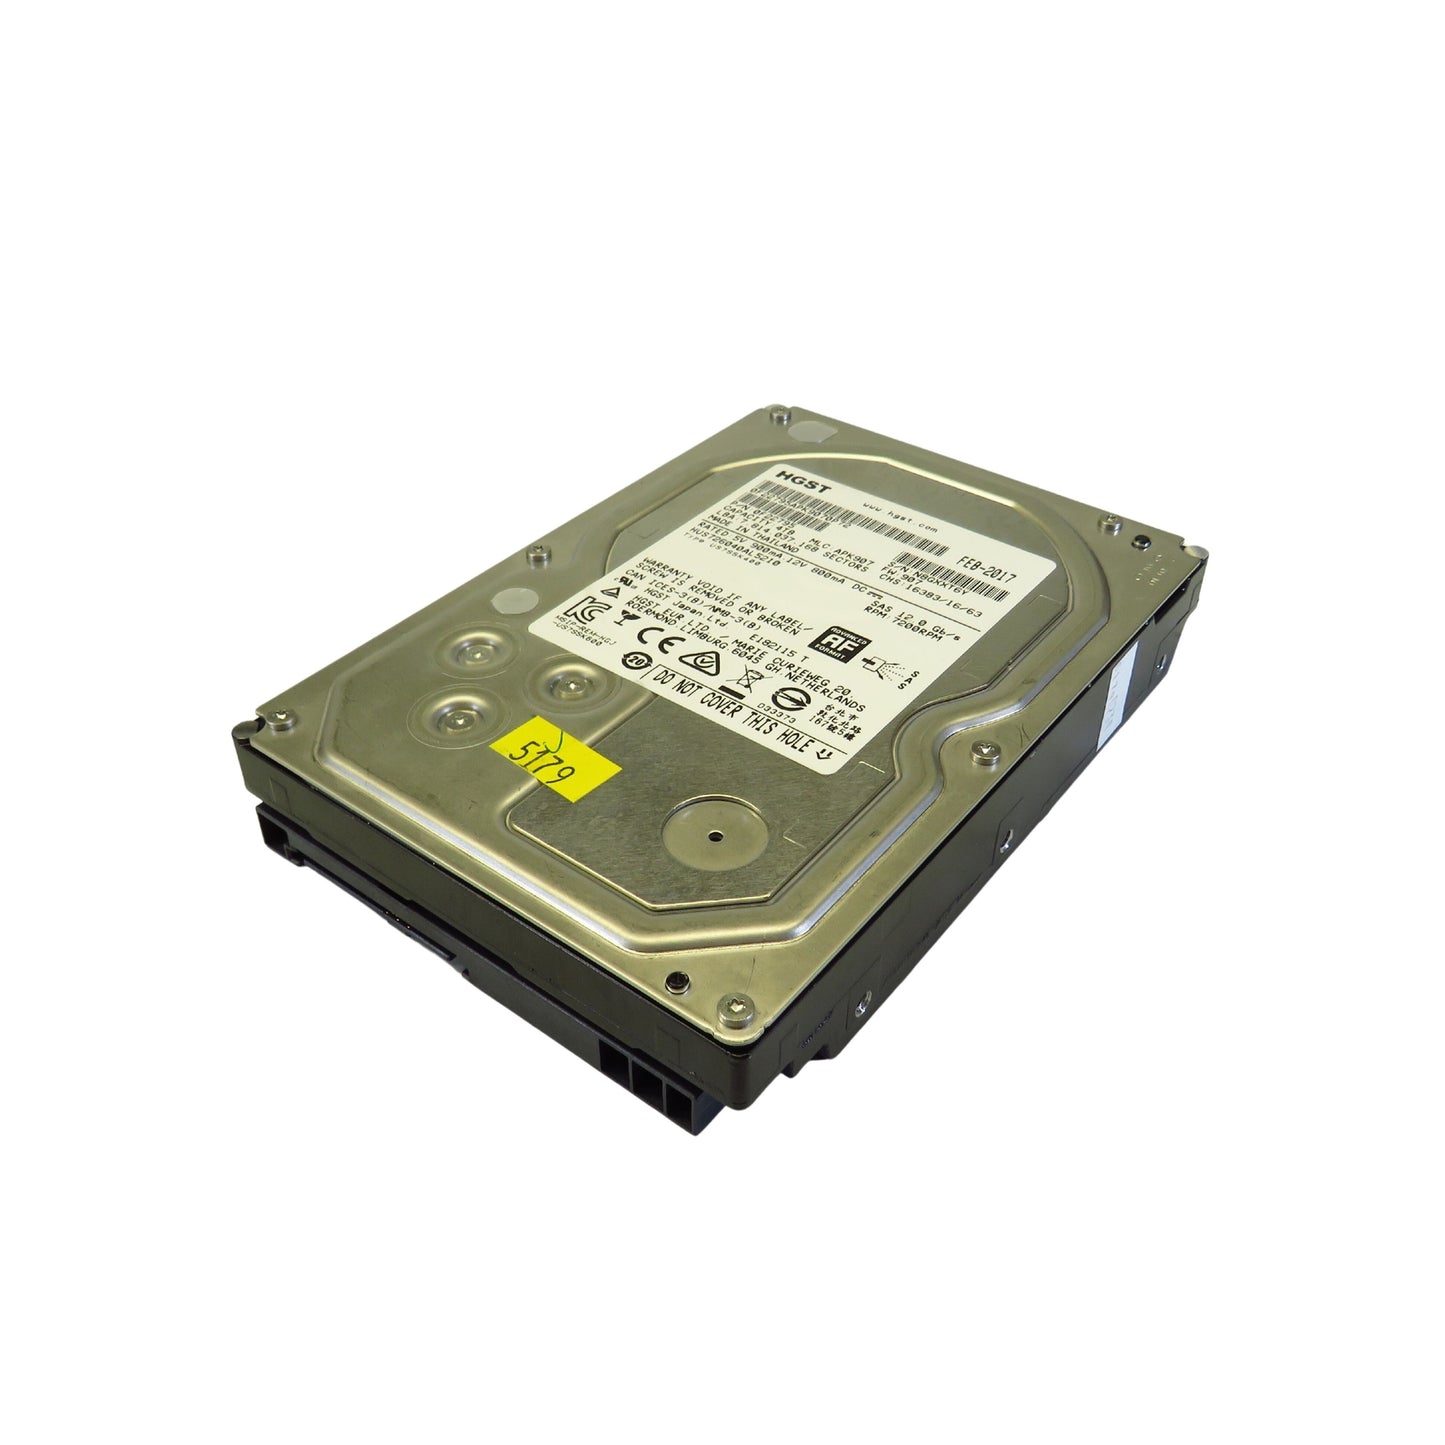 HGST 0F22795 HUS726040AL5210 4TB 3.5" SAS 12Gbps 7.2K RPM HDD Hard Drive (Refurbished)